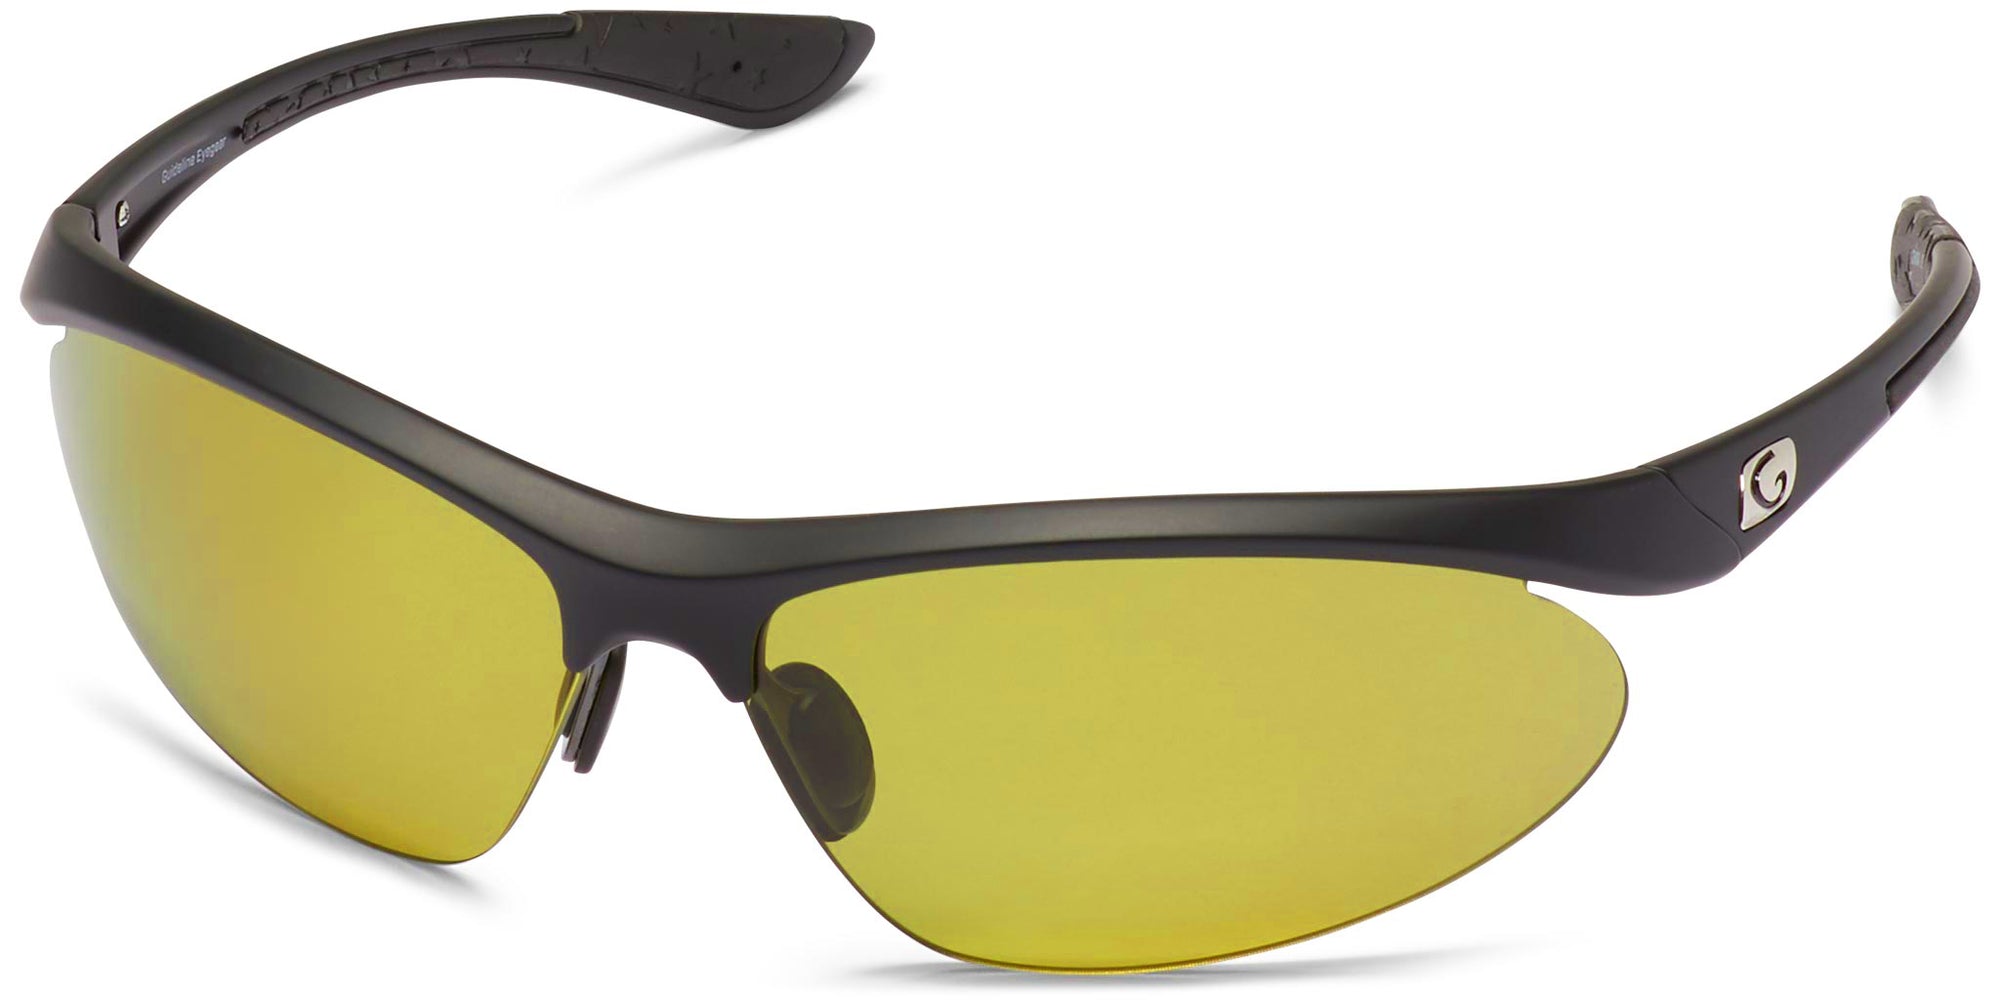 Spray - Matte Black/Amber Lens - Polarized Sunglasses